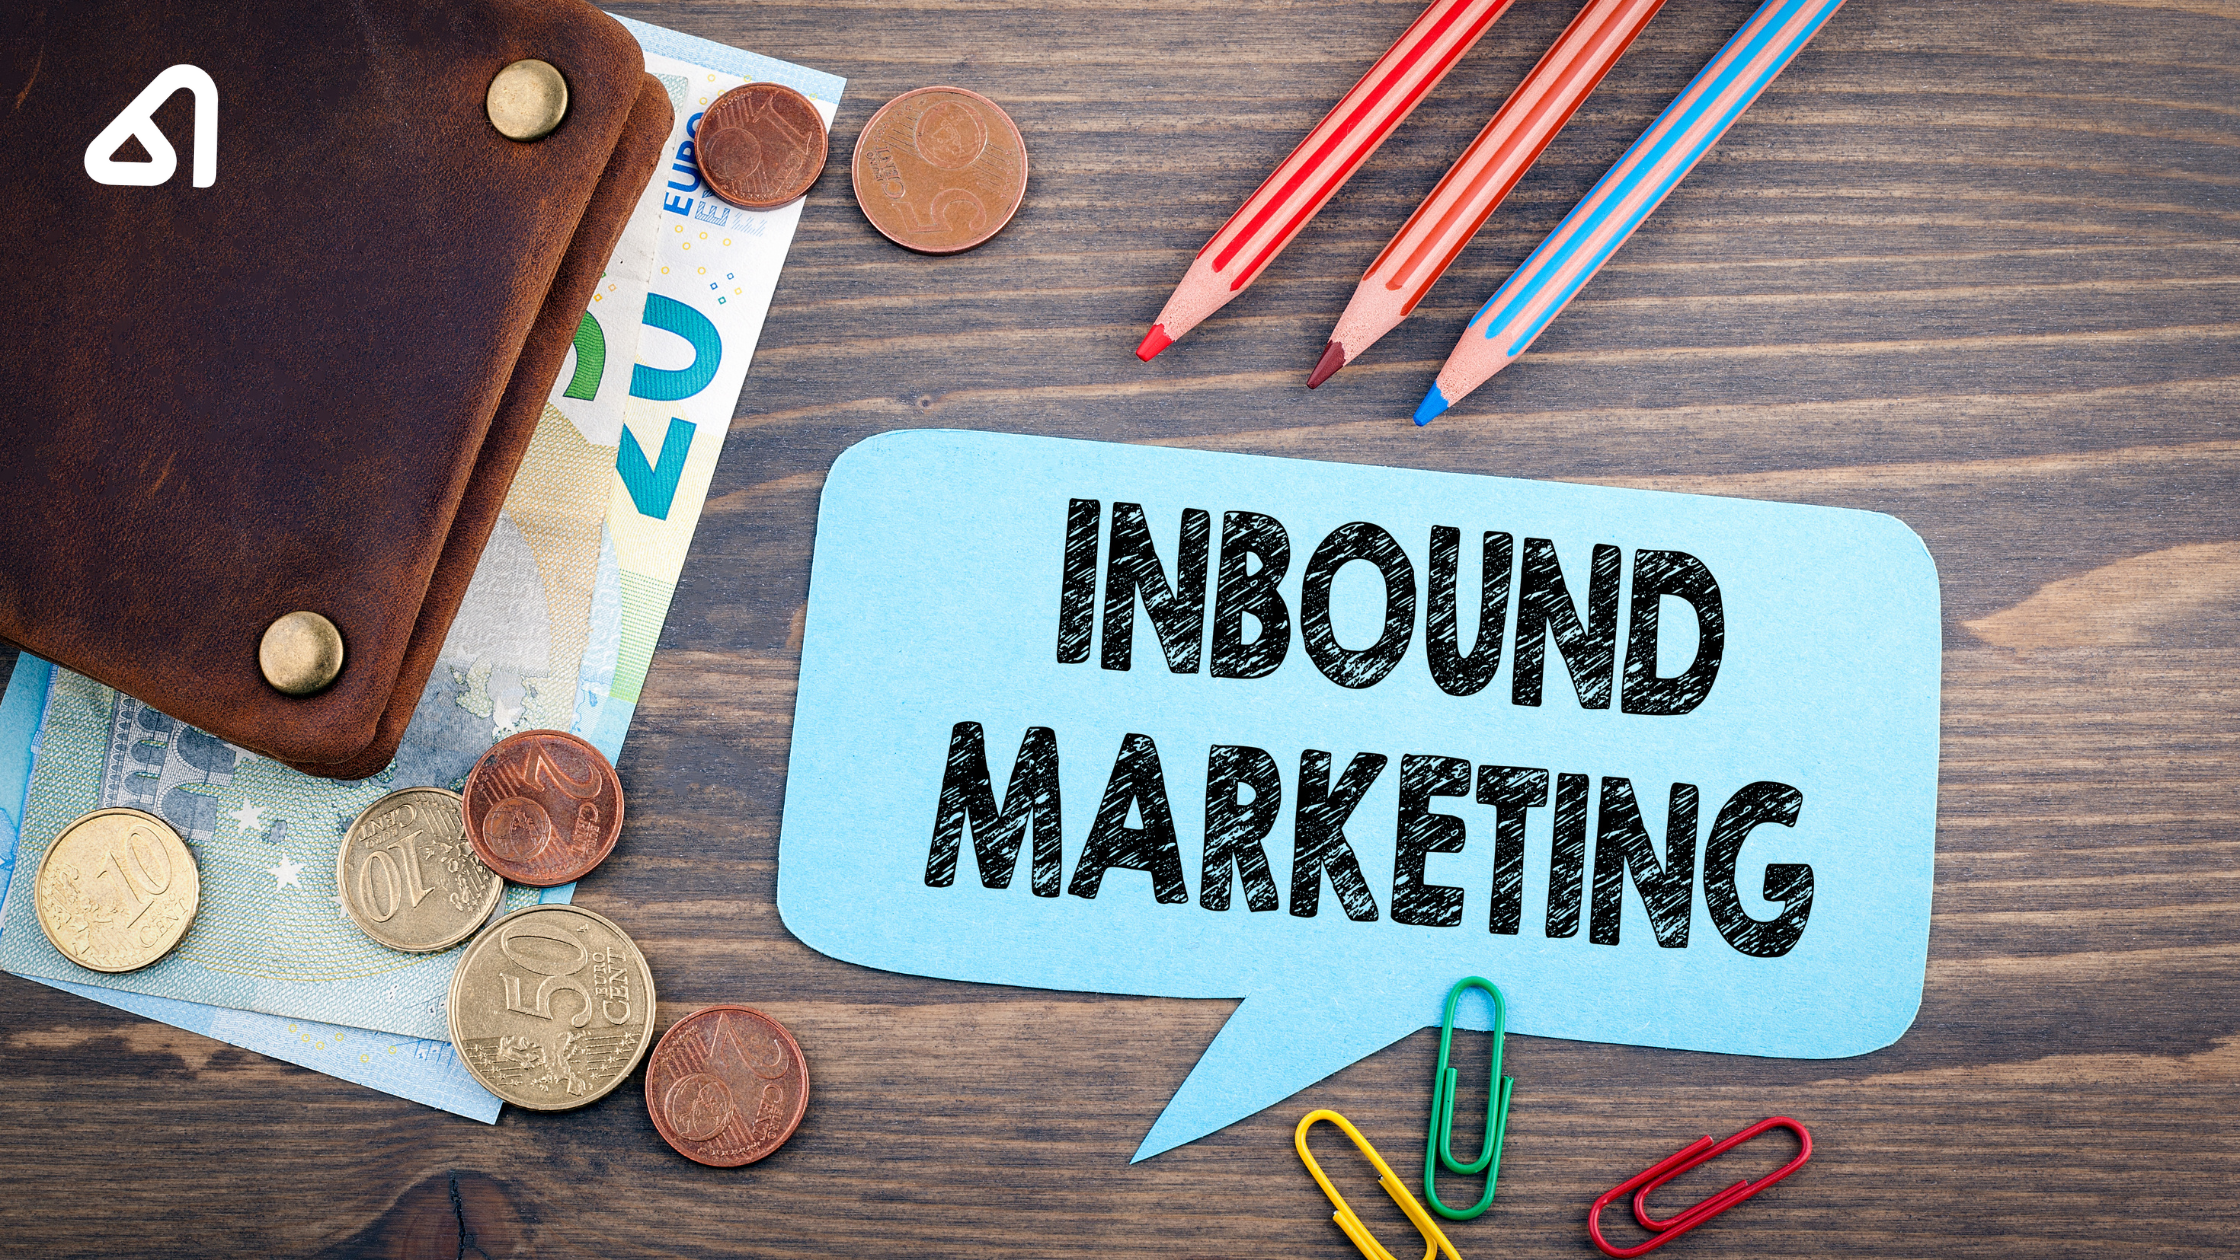 Inbound vs Outbound Marketing